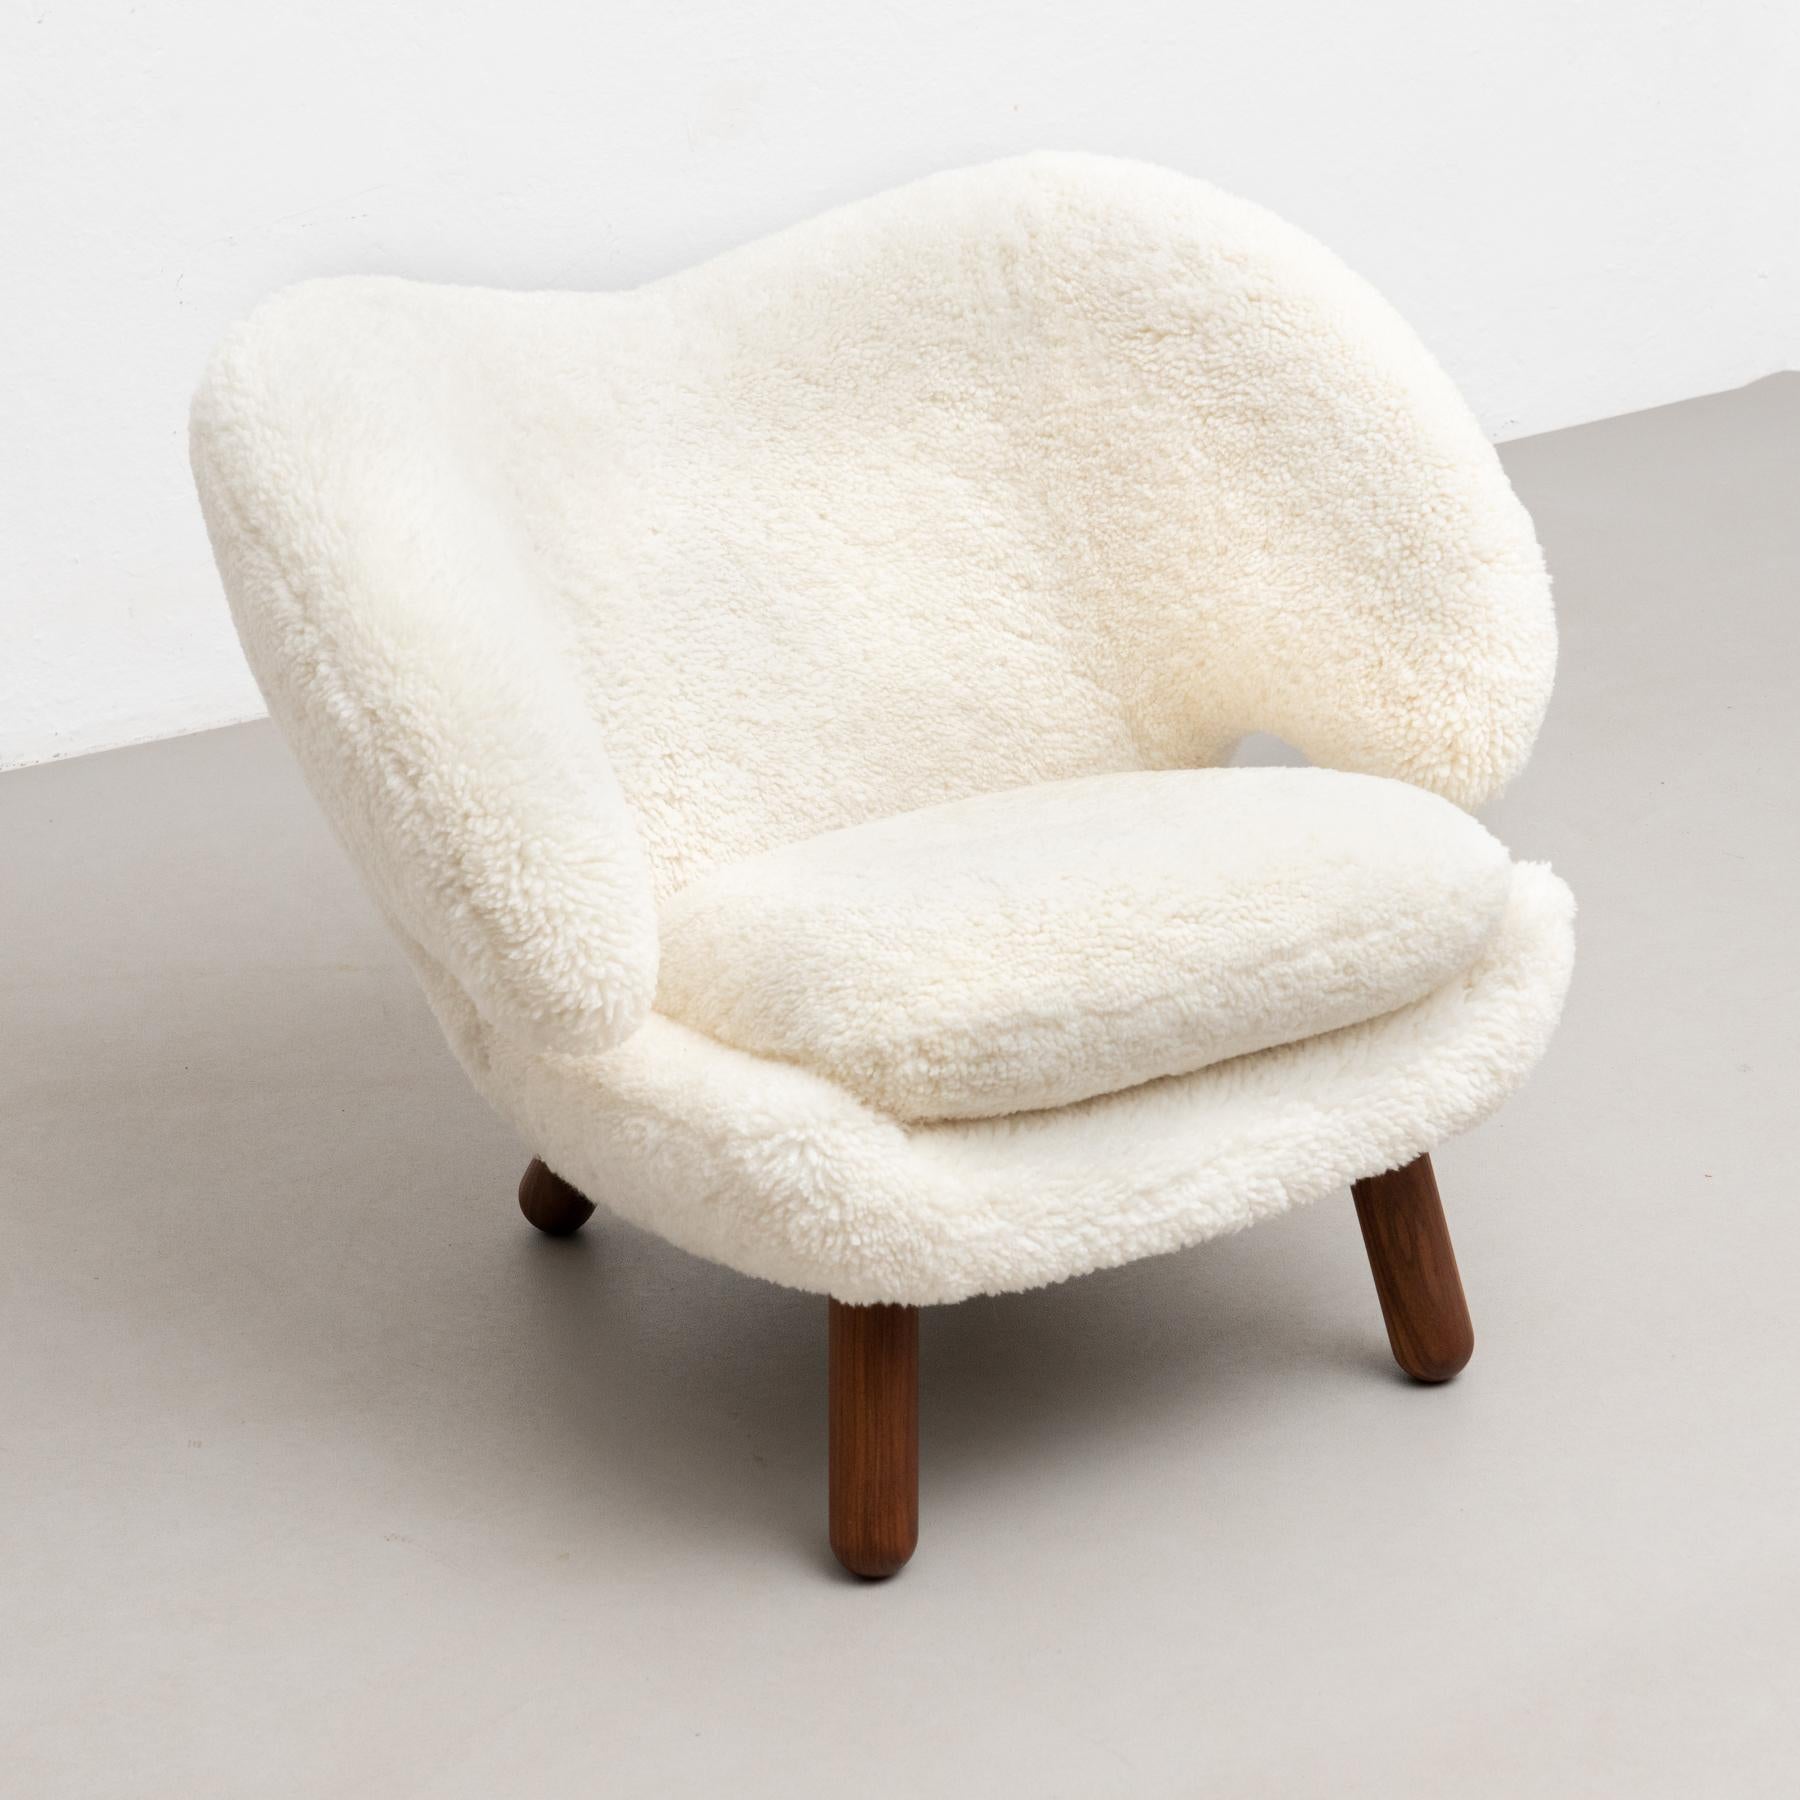 Finn Juhl Pelican Chair Upholstered in Offwhite Sheepskin For Sale 1